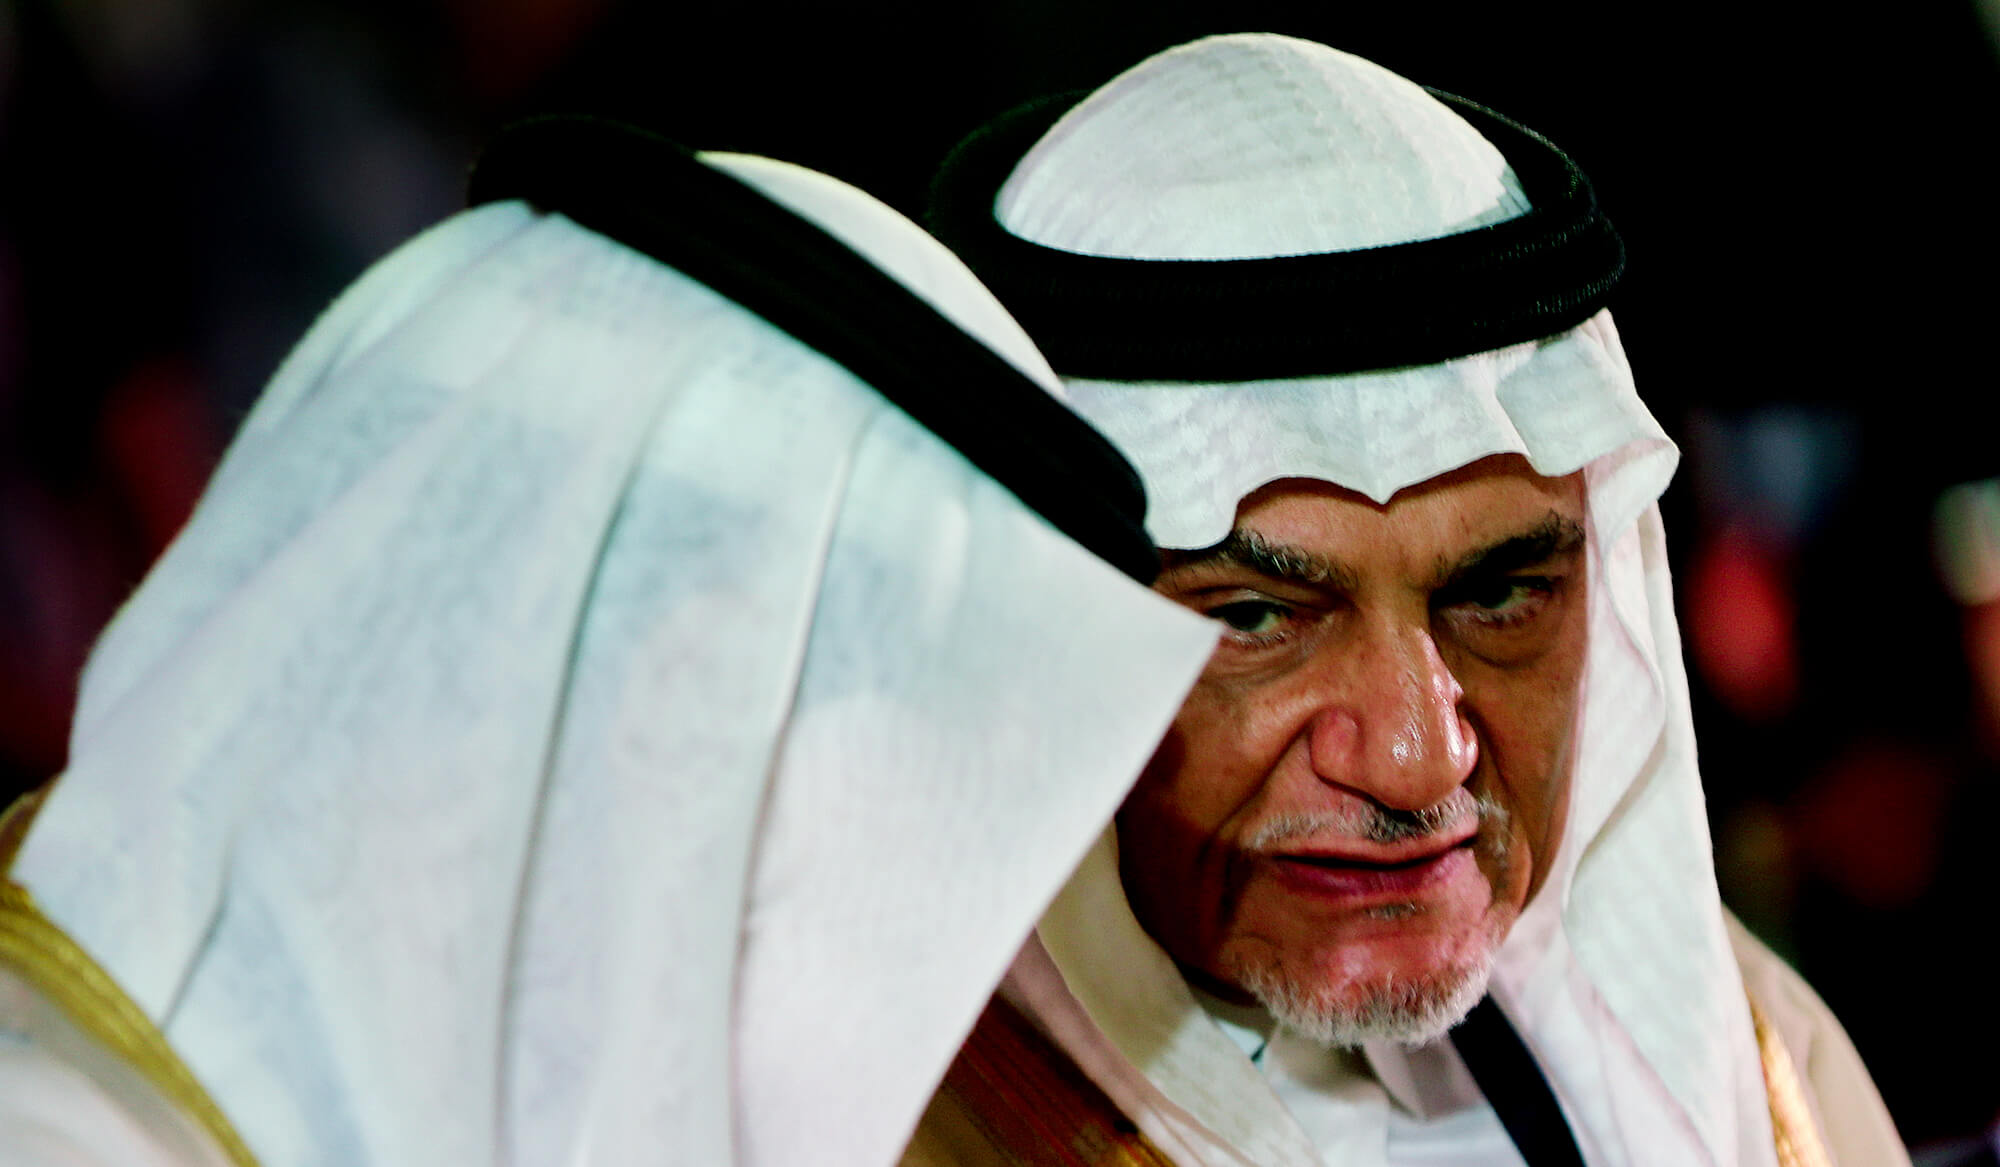 Turki al-Faisal | Jamal Khashoggi